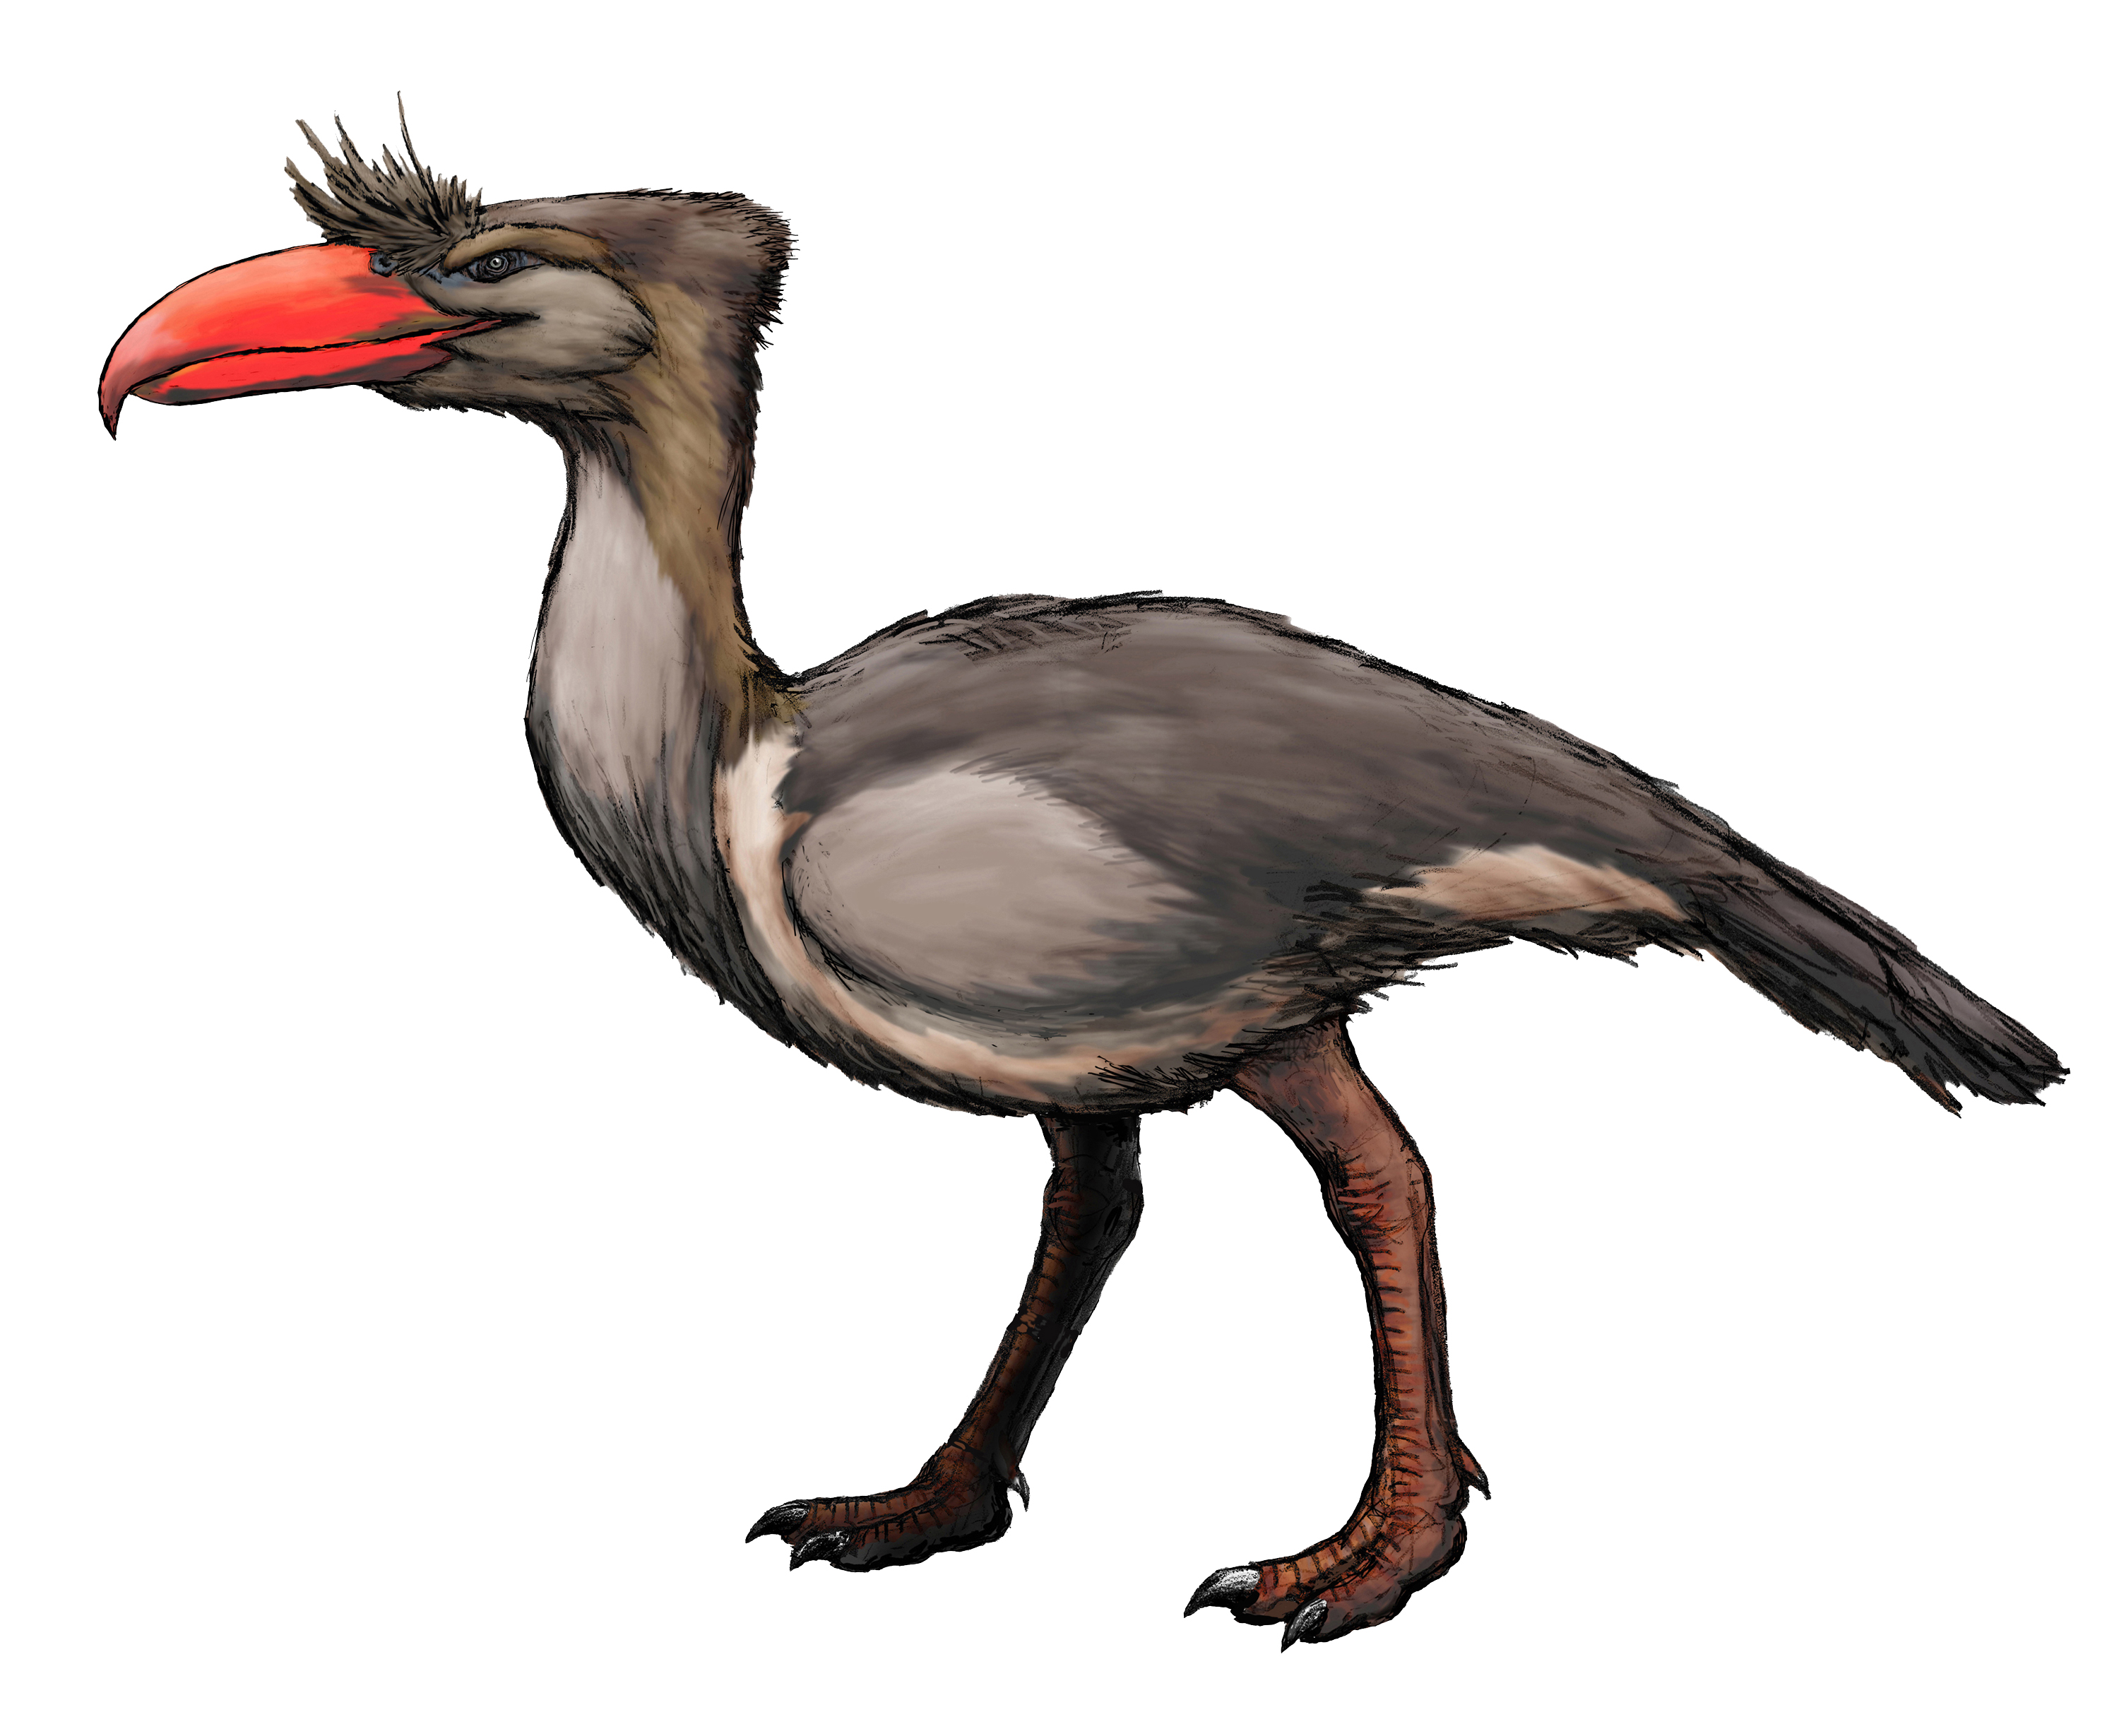 Rekonstrukce přibližného vzezření kelenkena, jednoho z největších známých dravých ptáků v dějinách života na Zemi. Přibližně před 15 miliony let představoval tento tři metry vysoký a čtvrt tuny vážící forusracid obávaného predátora na území současné 